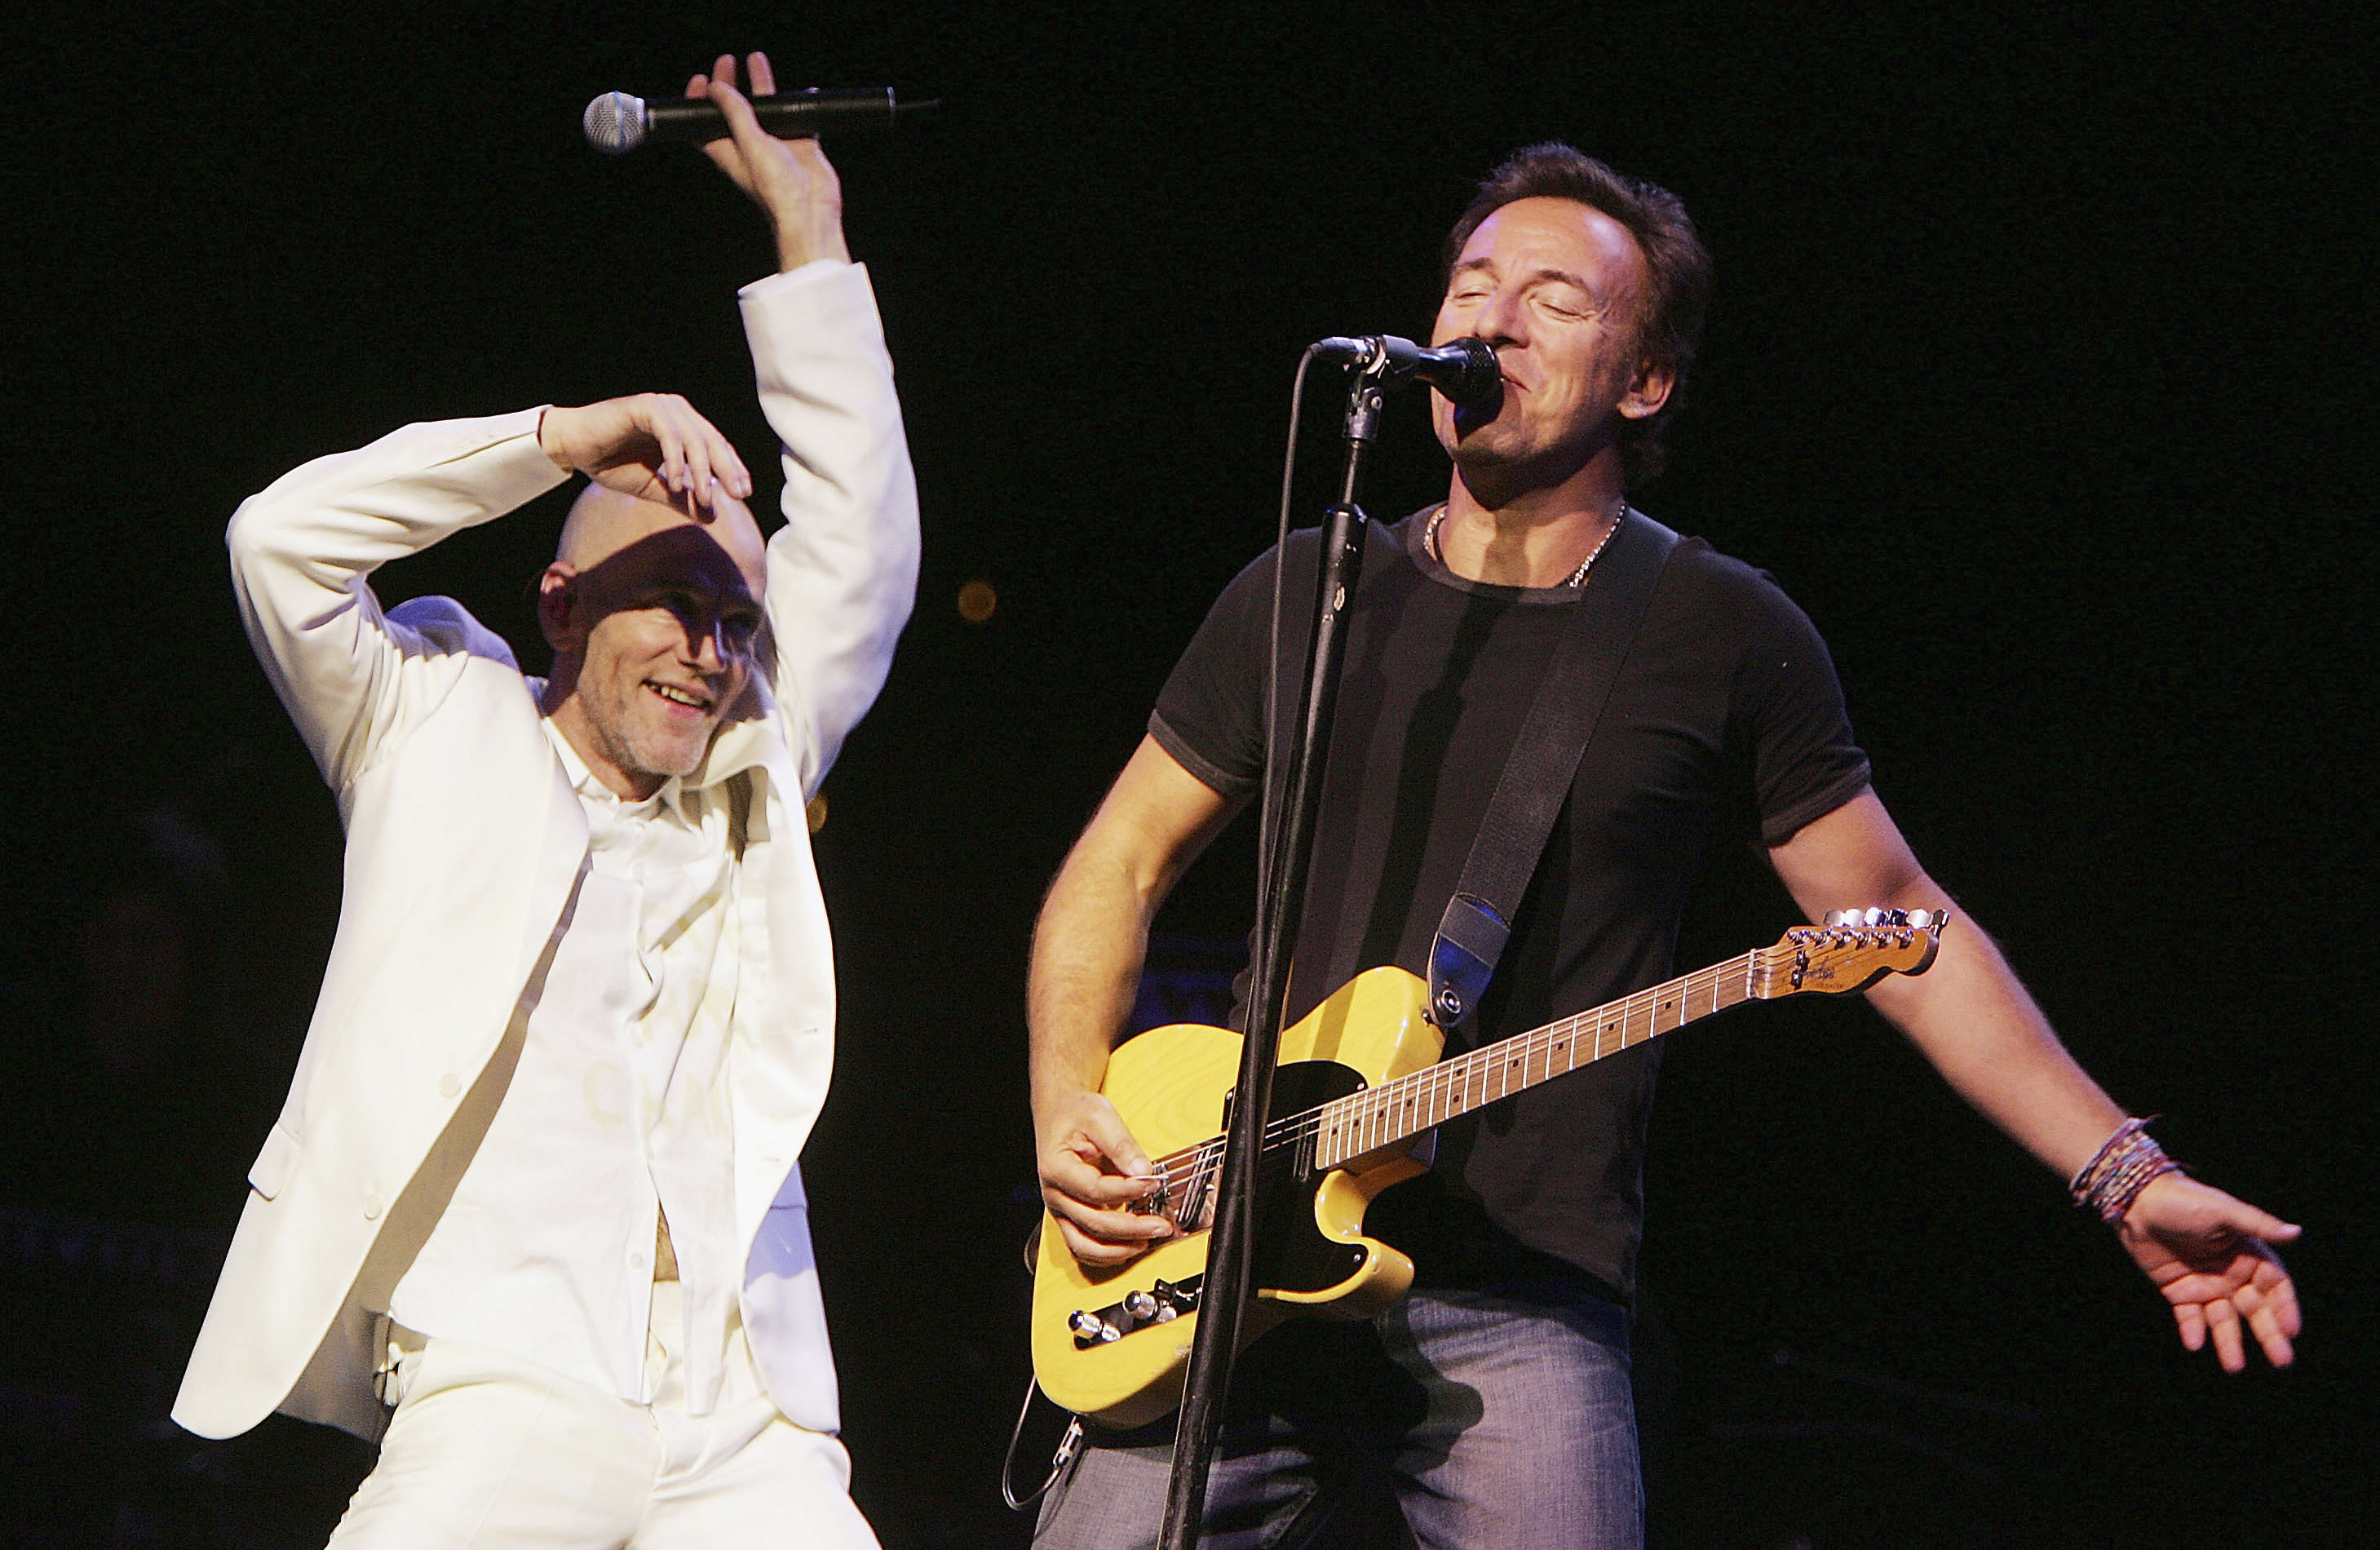 Springsteen at Seventy